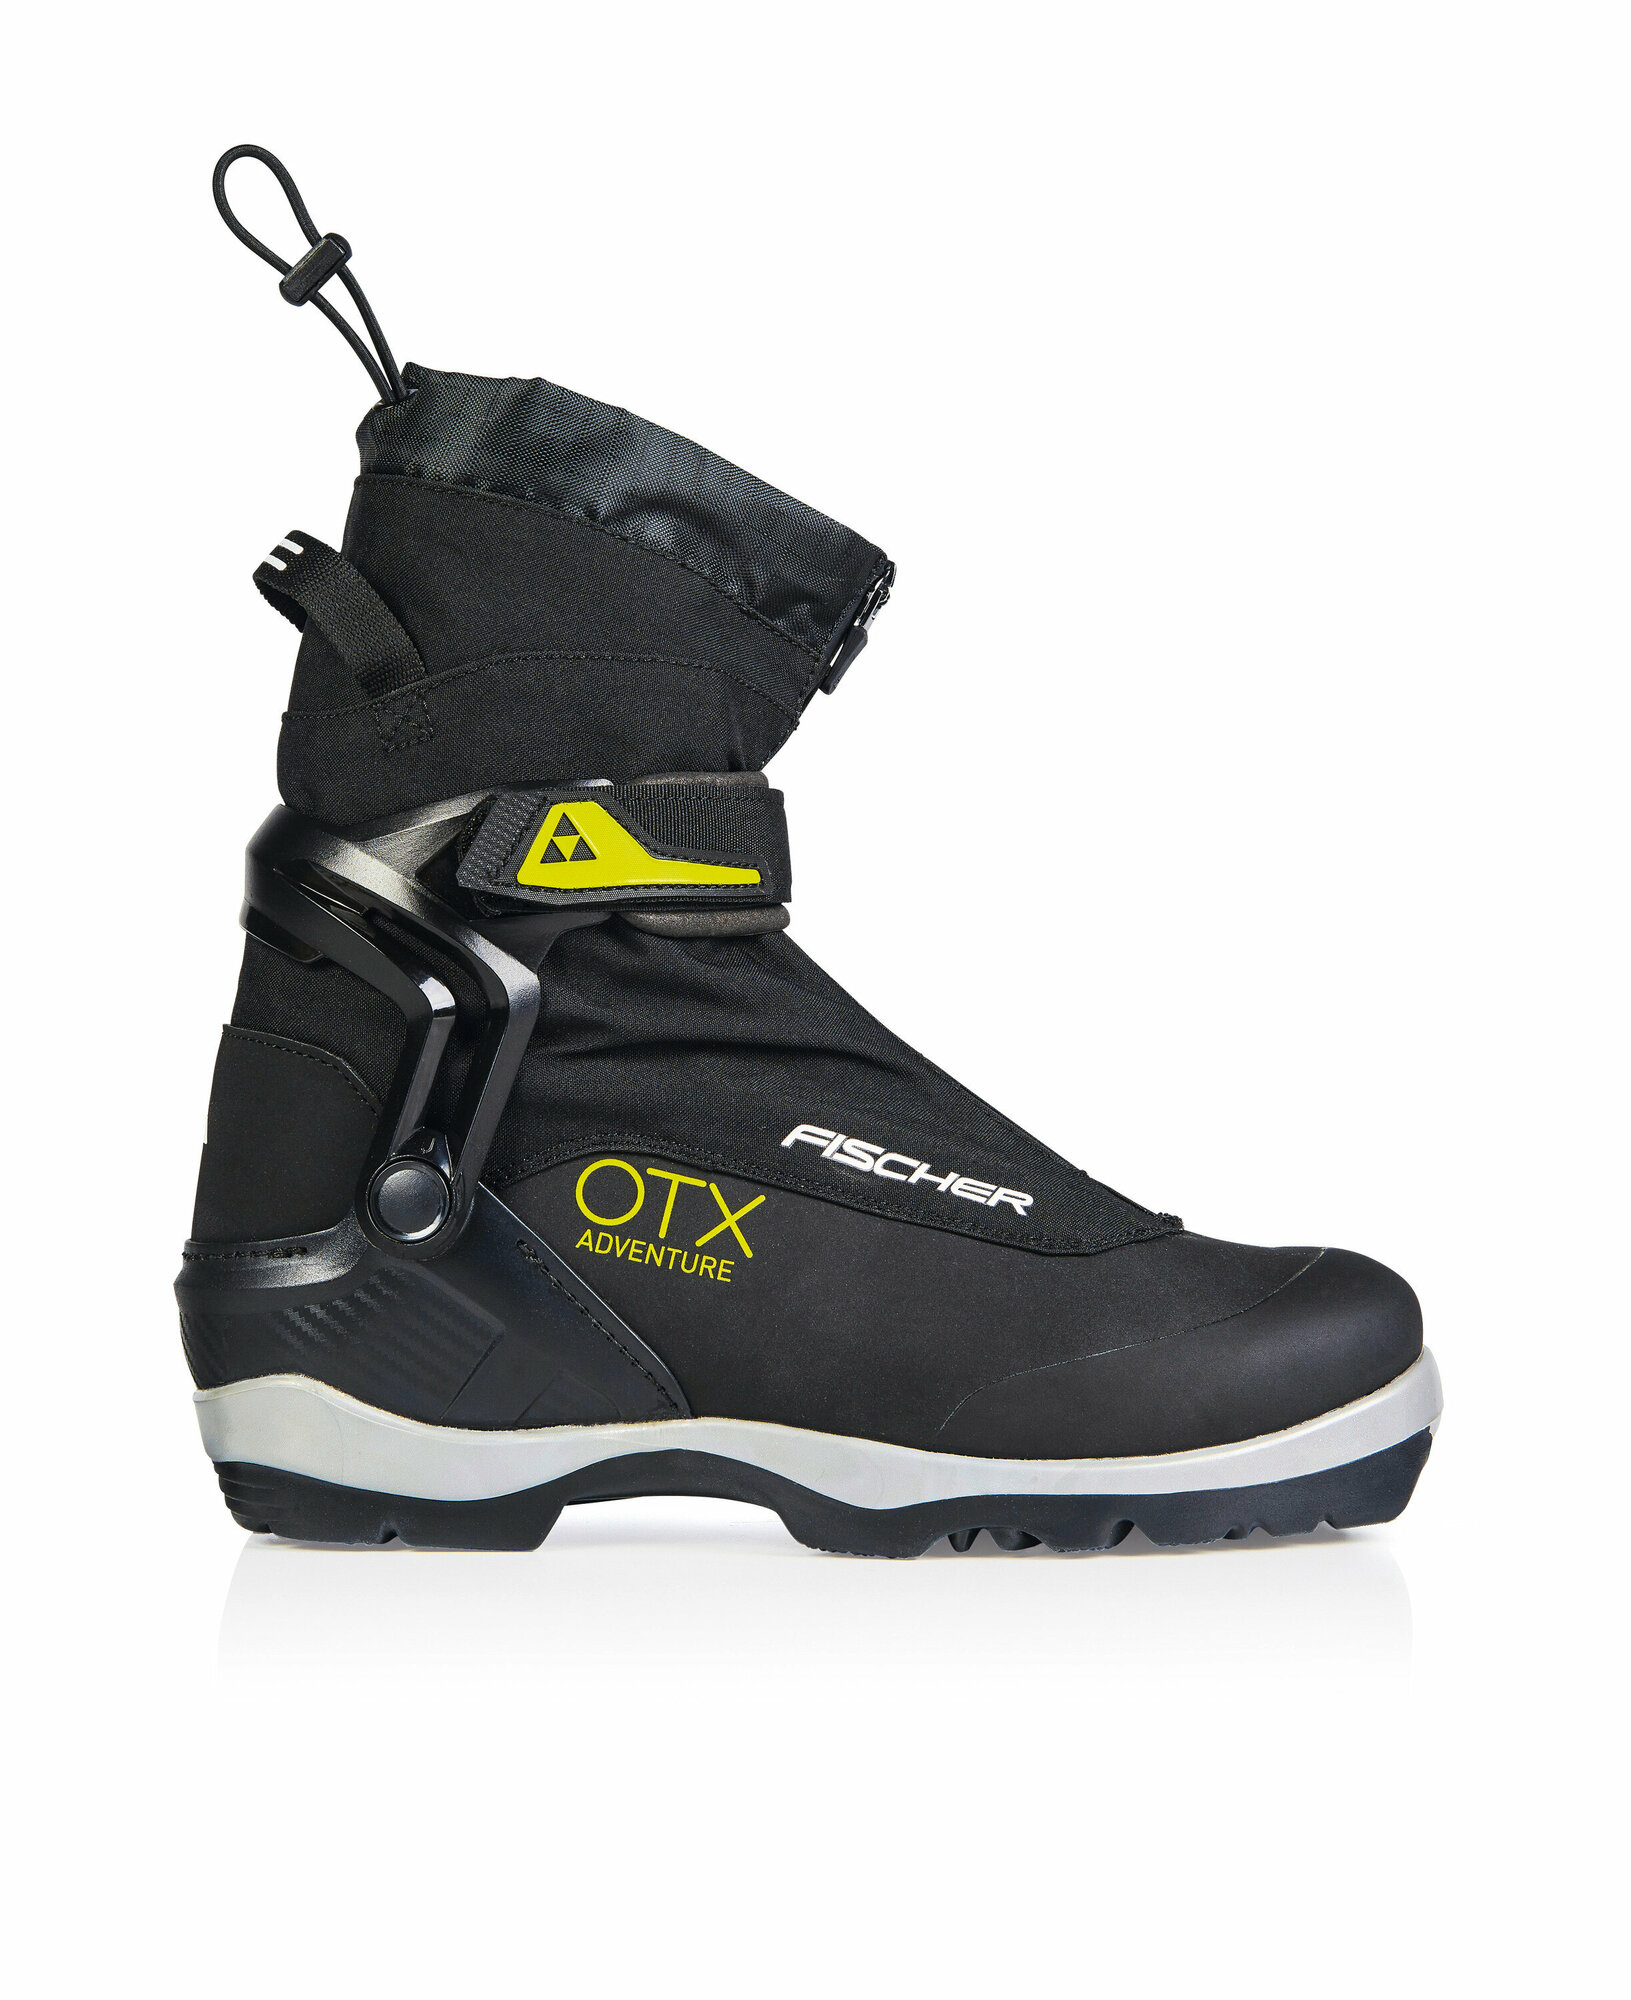 Ботинки для беговых лыж Fischer OTX Adventure BC Back Country, Черный, размер 47 - фото №1